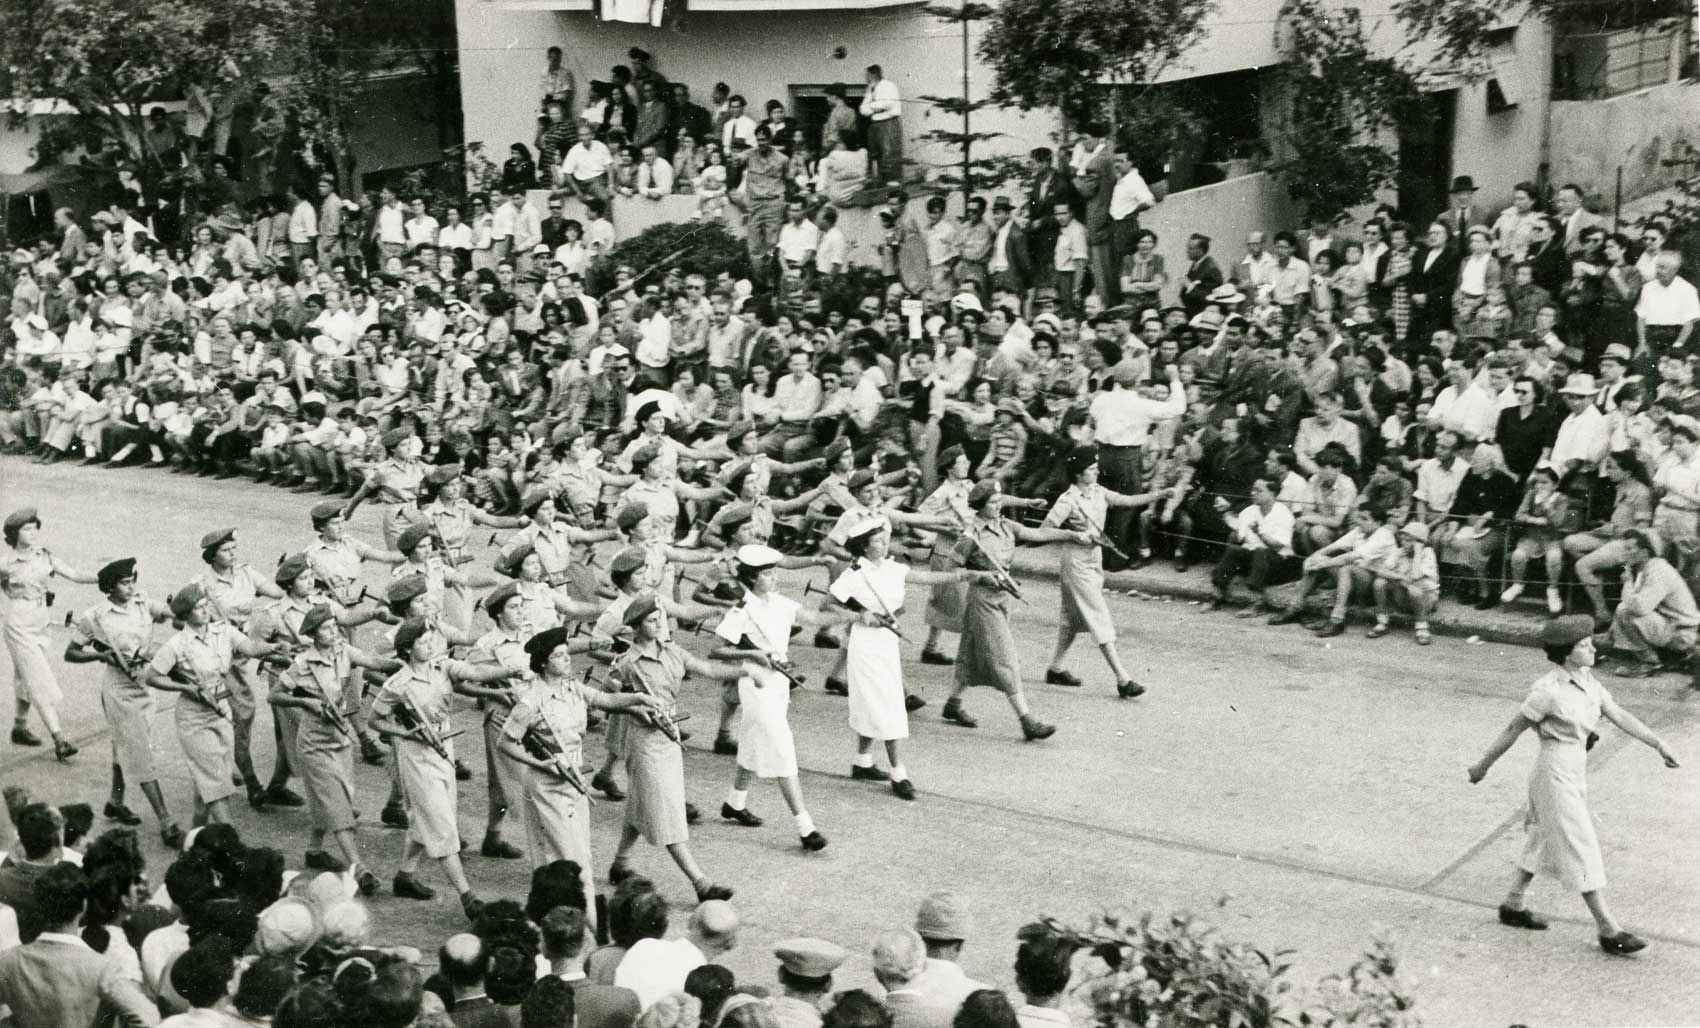 Anny a tiszti tanfolyam vége felé, a függetlenség napi felvonuláson, Izrael, 1952 (forrás: Dokuforte / Raphael Ventura)